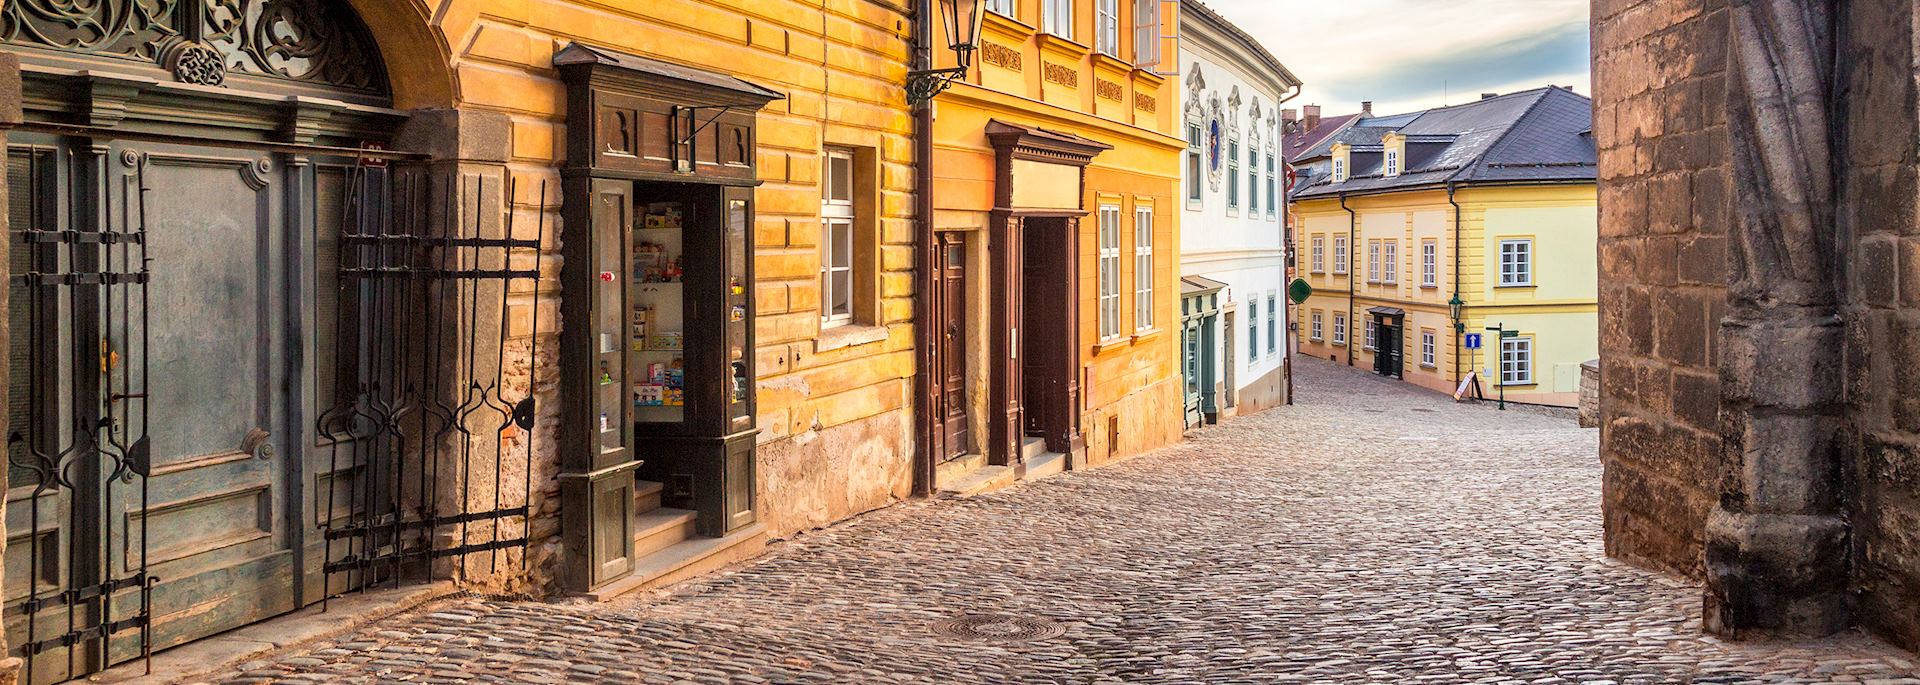 Medieval street in Kutná Hora